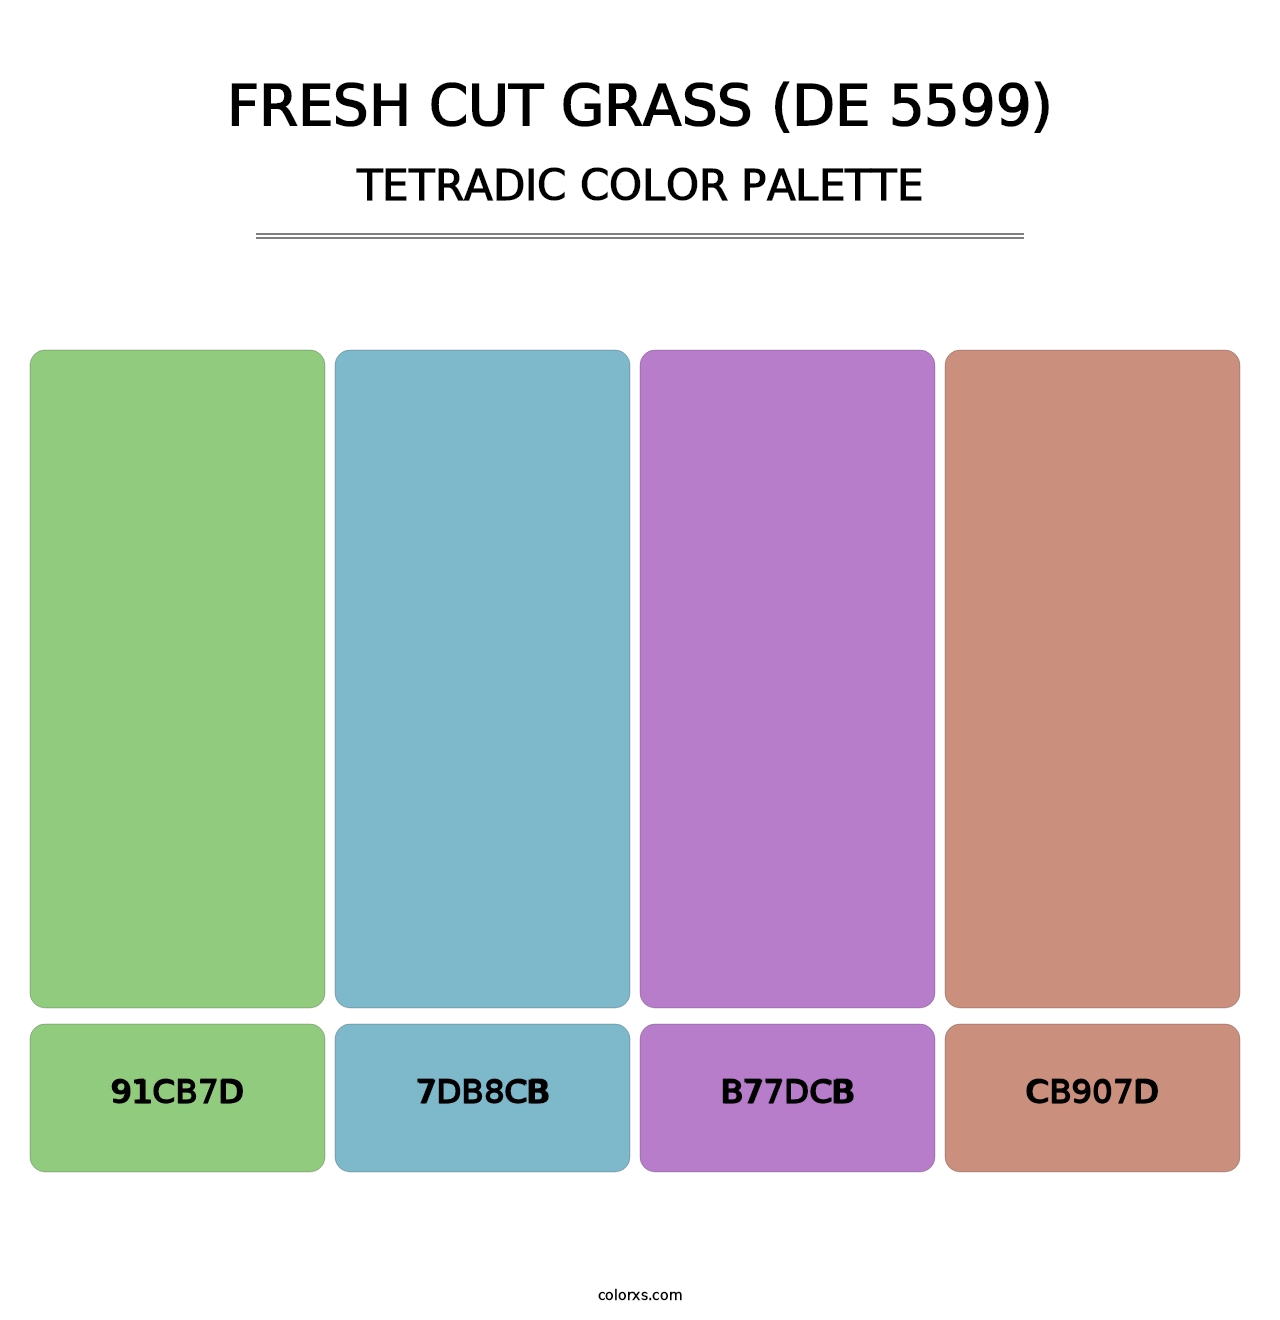 Fresh Cut Grass (DE 5599) - Tetradic Color Palette